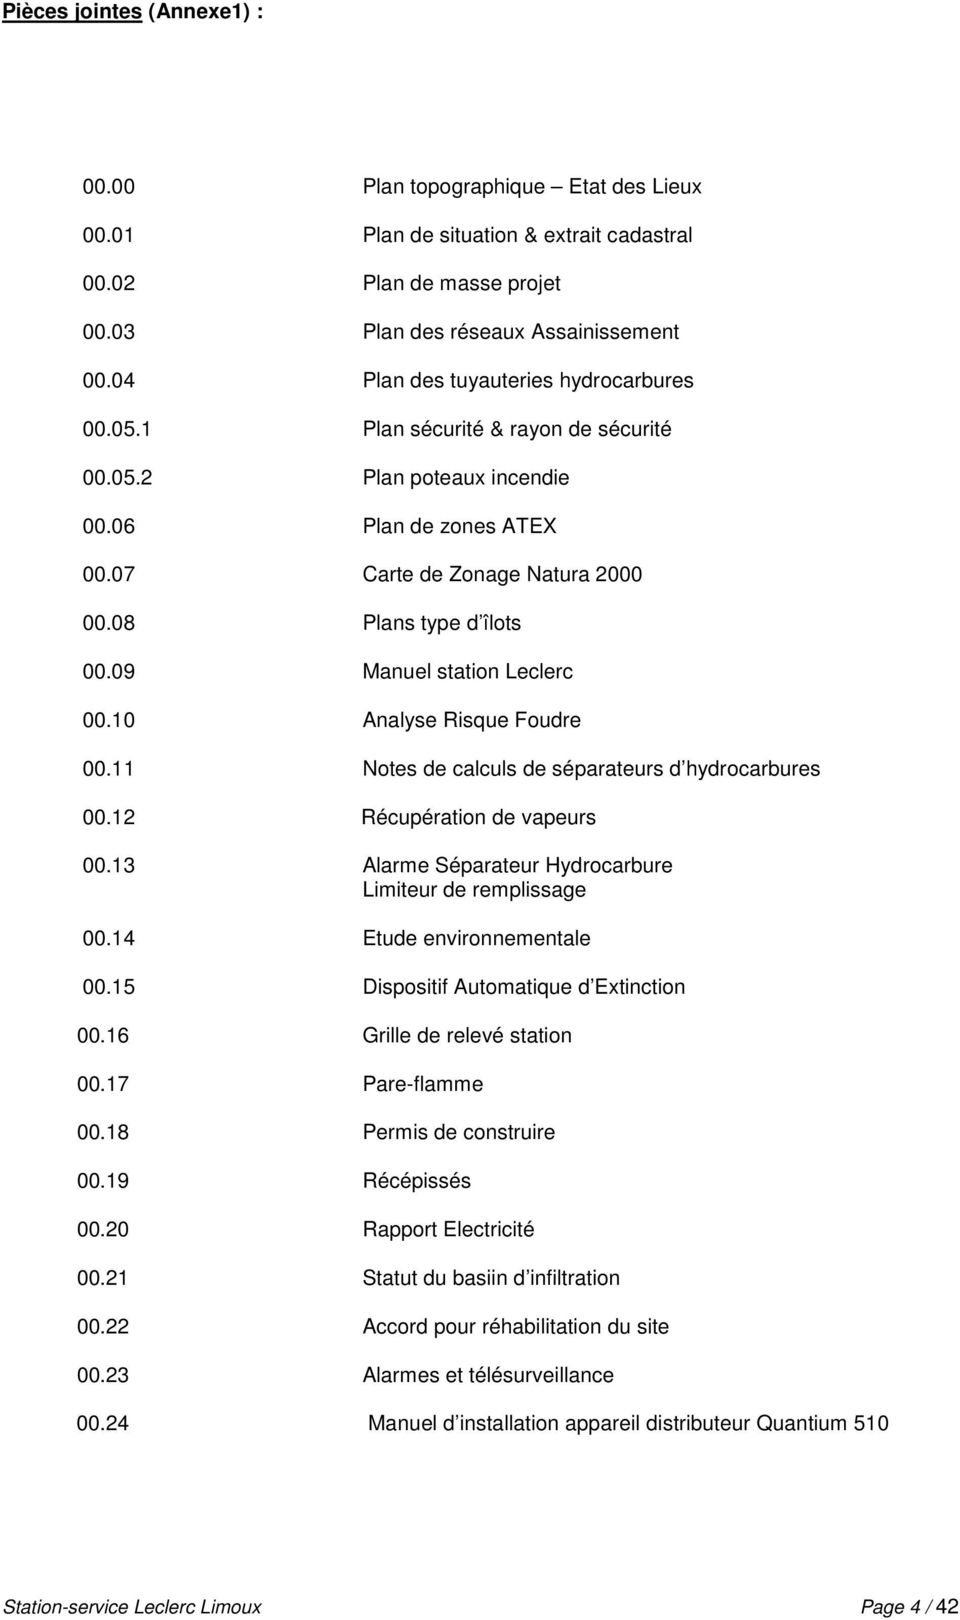 09 Manuel station Leclerc 00.10 Analyse Risque Foudre 00.11 Notes de calculs de séparateurs d hydrocarbures 00.12 Récupération de vapeurs 00.